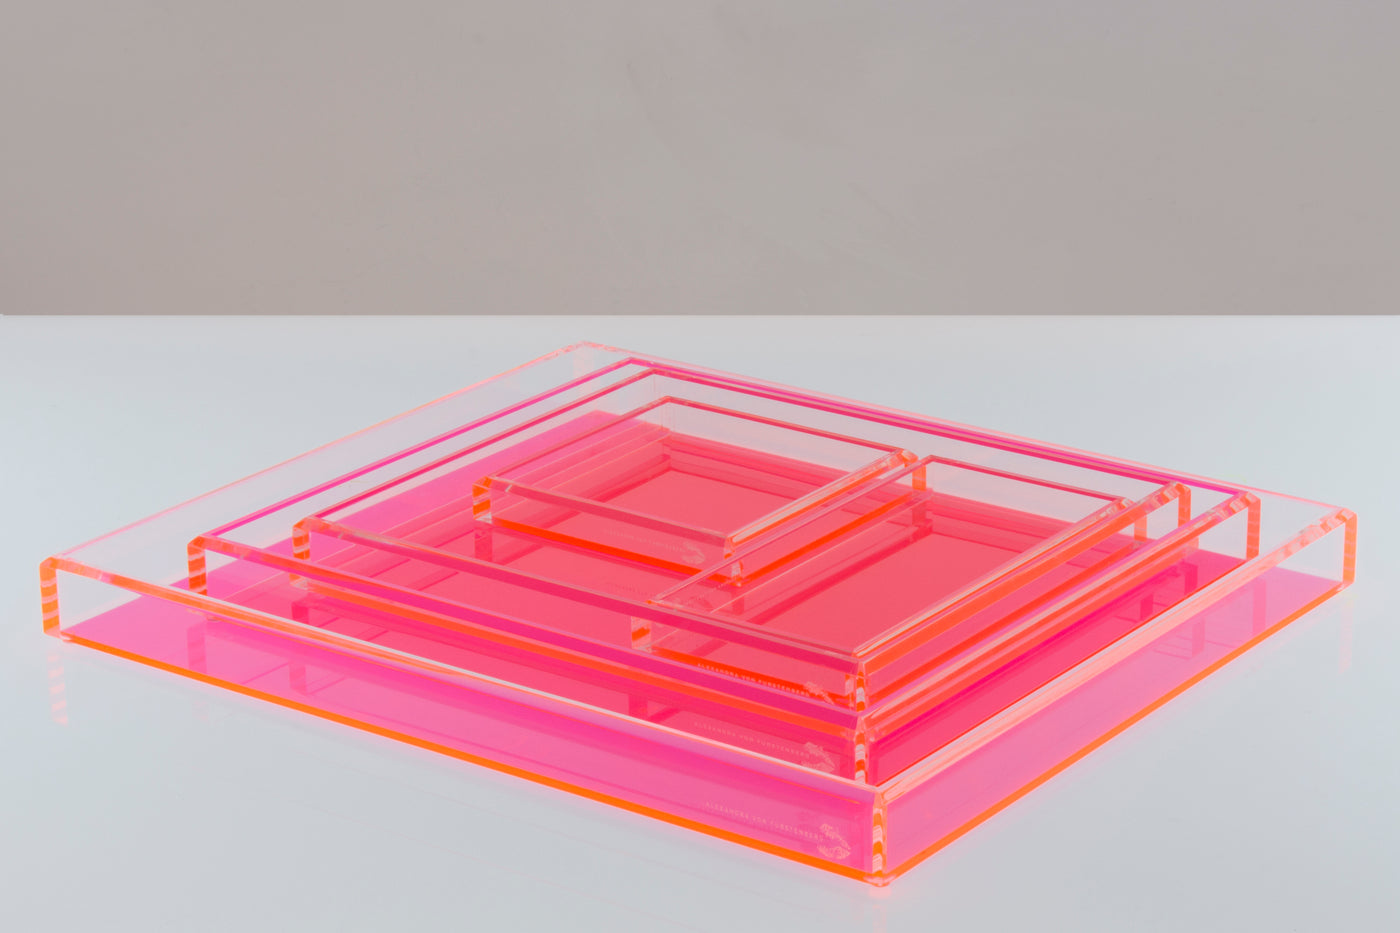 Medium Tray in Pink